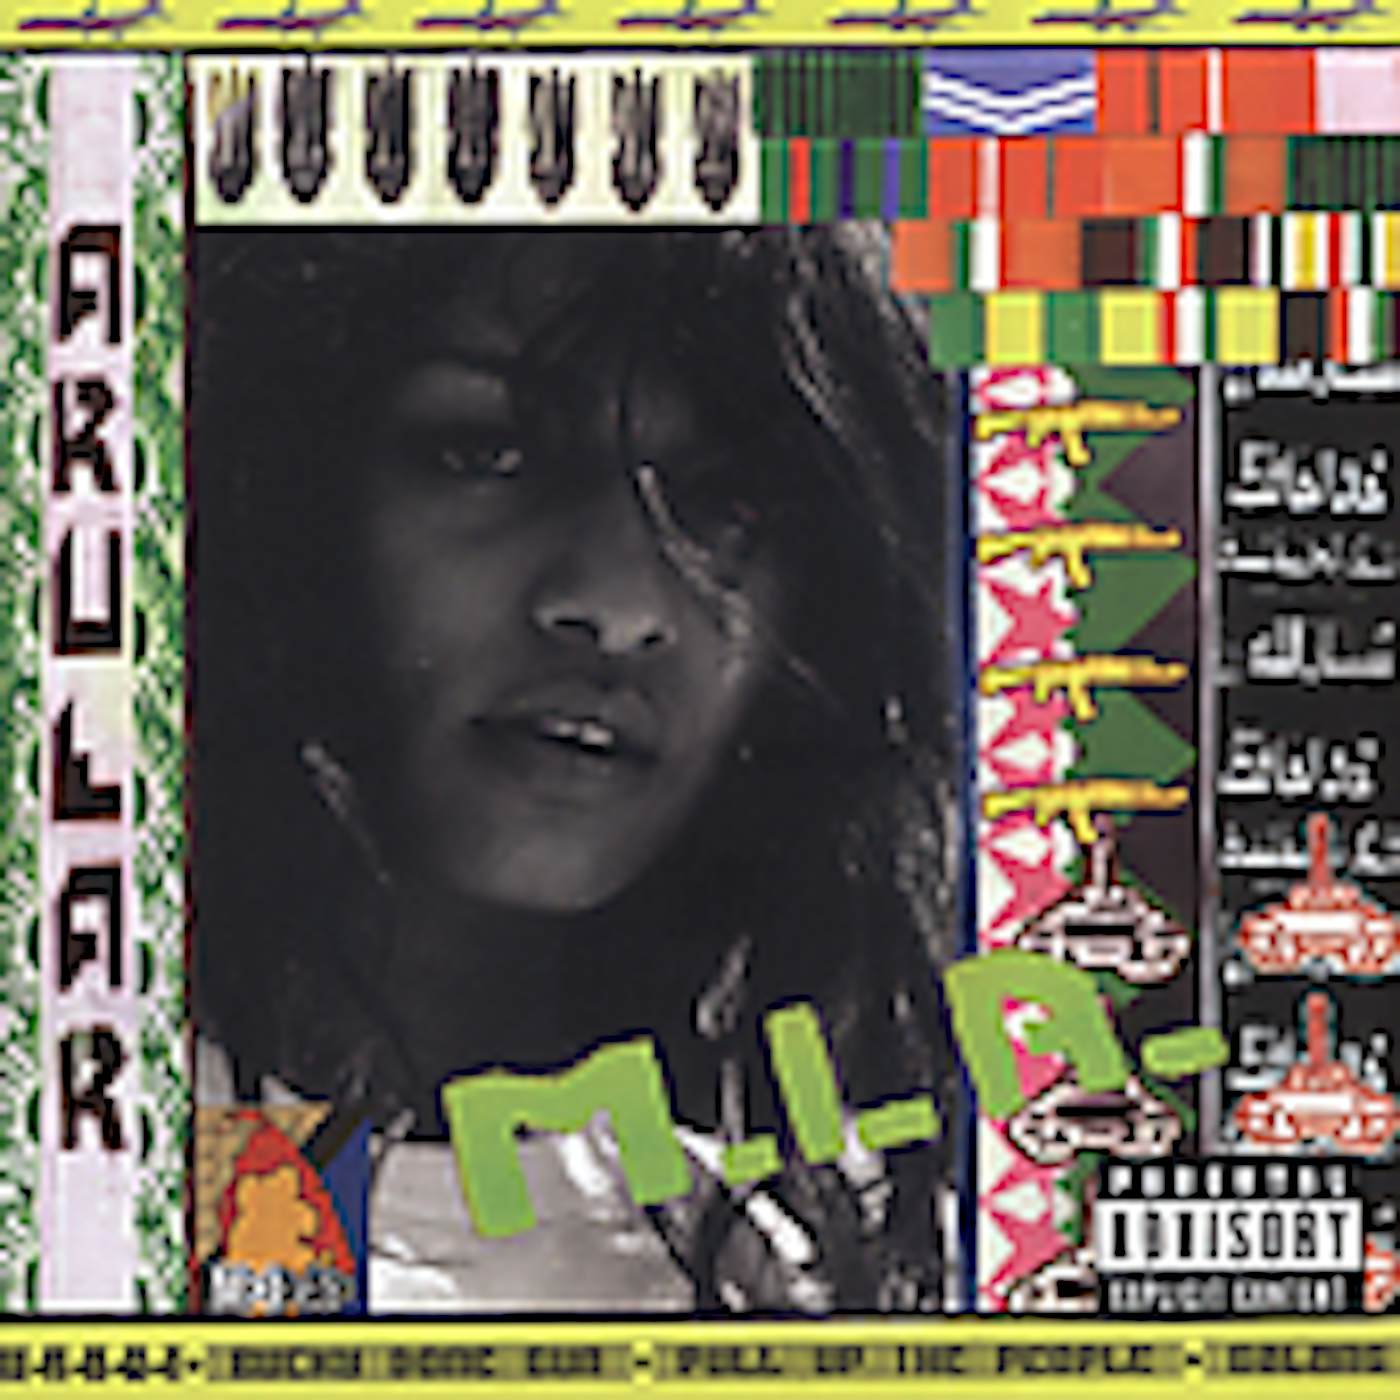 M.I.A. ARULAR CD